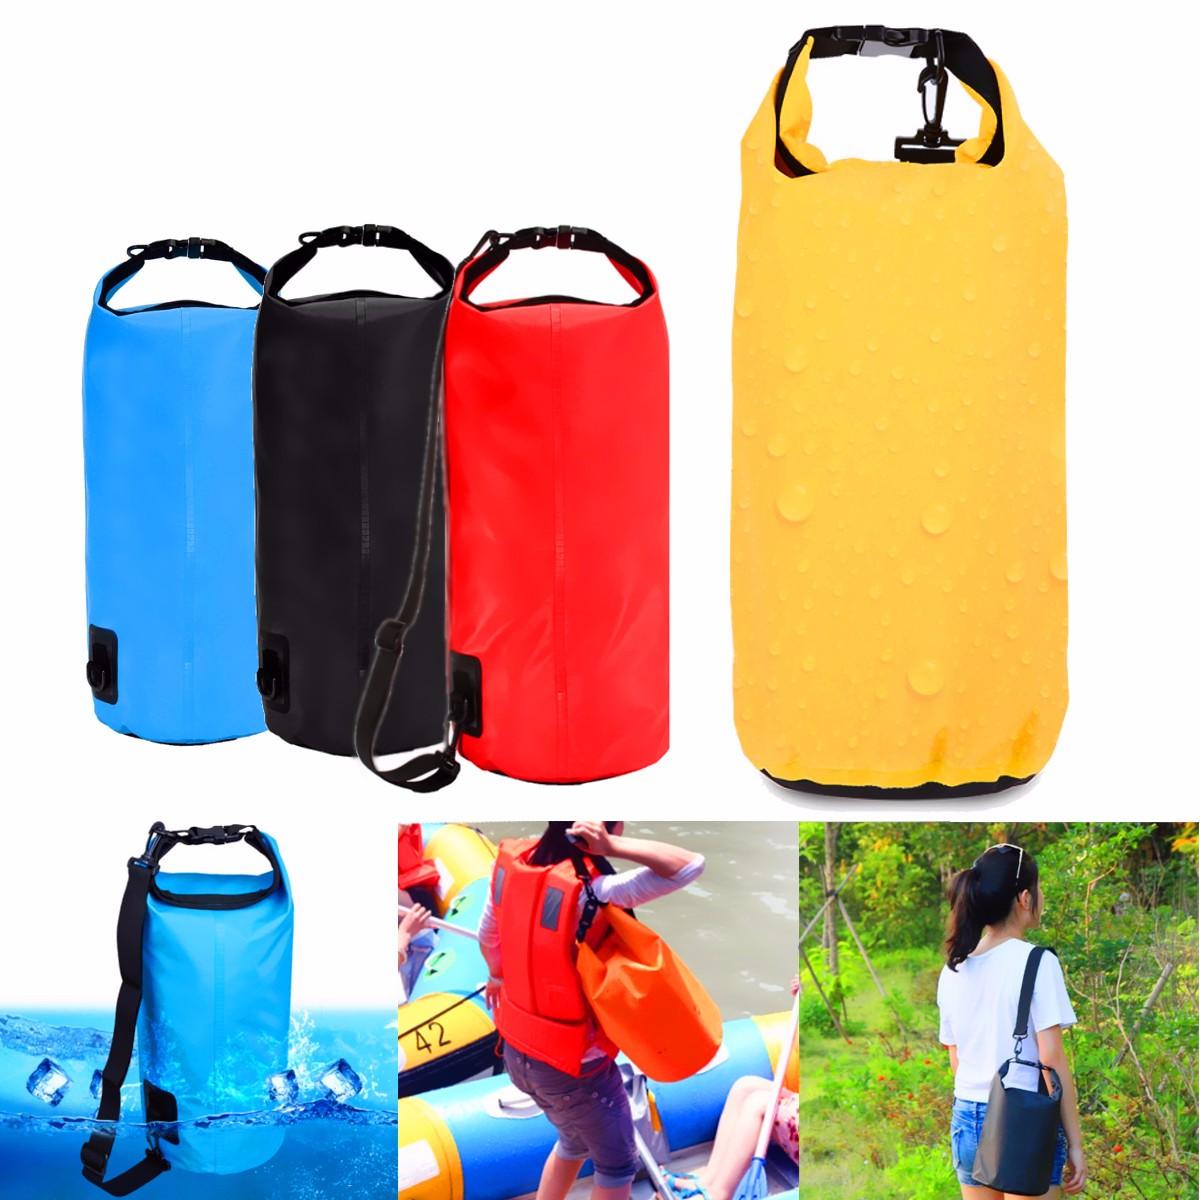 حقيبة مقاومة للماء بسعة 10 لترات للتخزين في التخييم والمشي والسباحة والرافتينج والكاياك